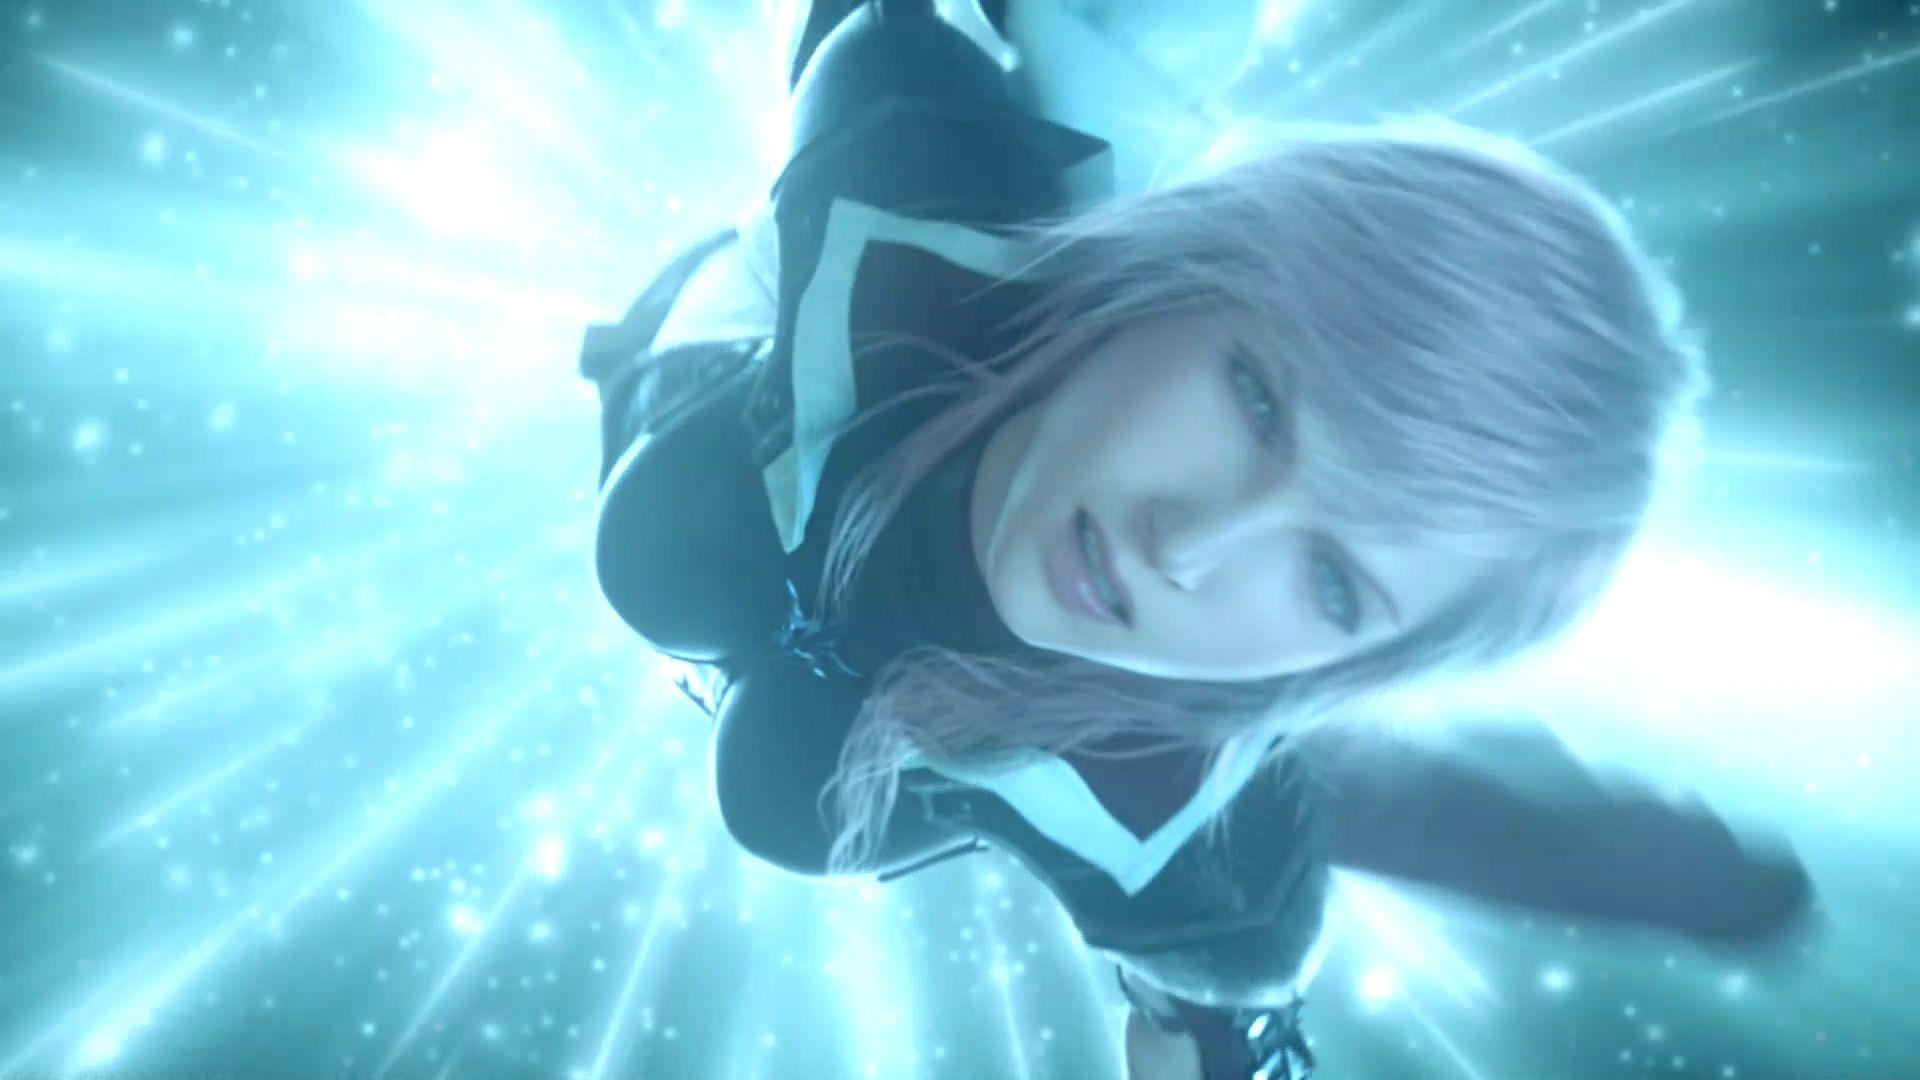 Wallpaper, fond d'ecran pour Lightning Returns, Final Fantasy XIII